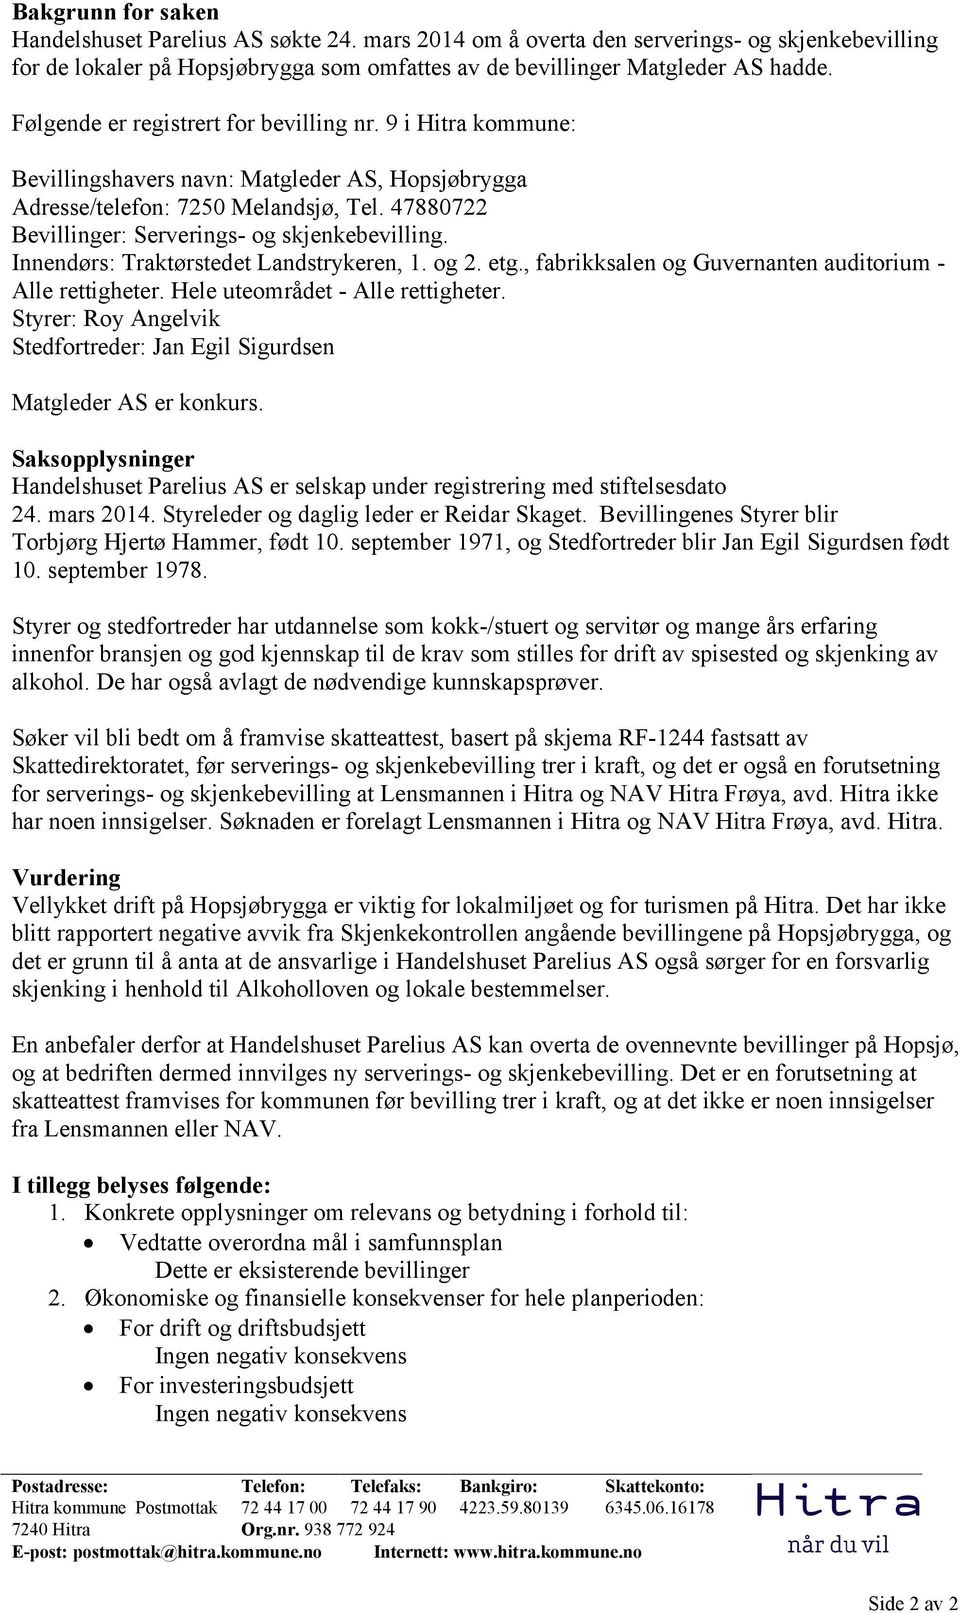 9 i Hitra kommune: Bevillingshavers navn: Matgleder AS, Hopsjøbrygga Adresse/telefon: 7250 Melandsjø, Tel. 47880722 Bevillinger: Serverings- og skjenkebevilling.